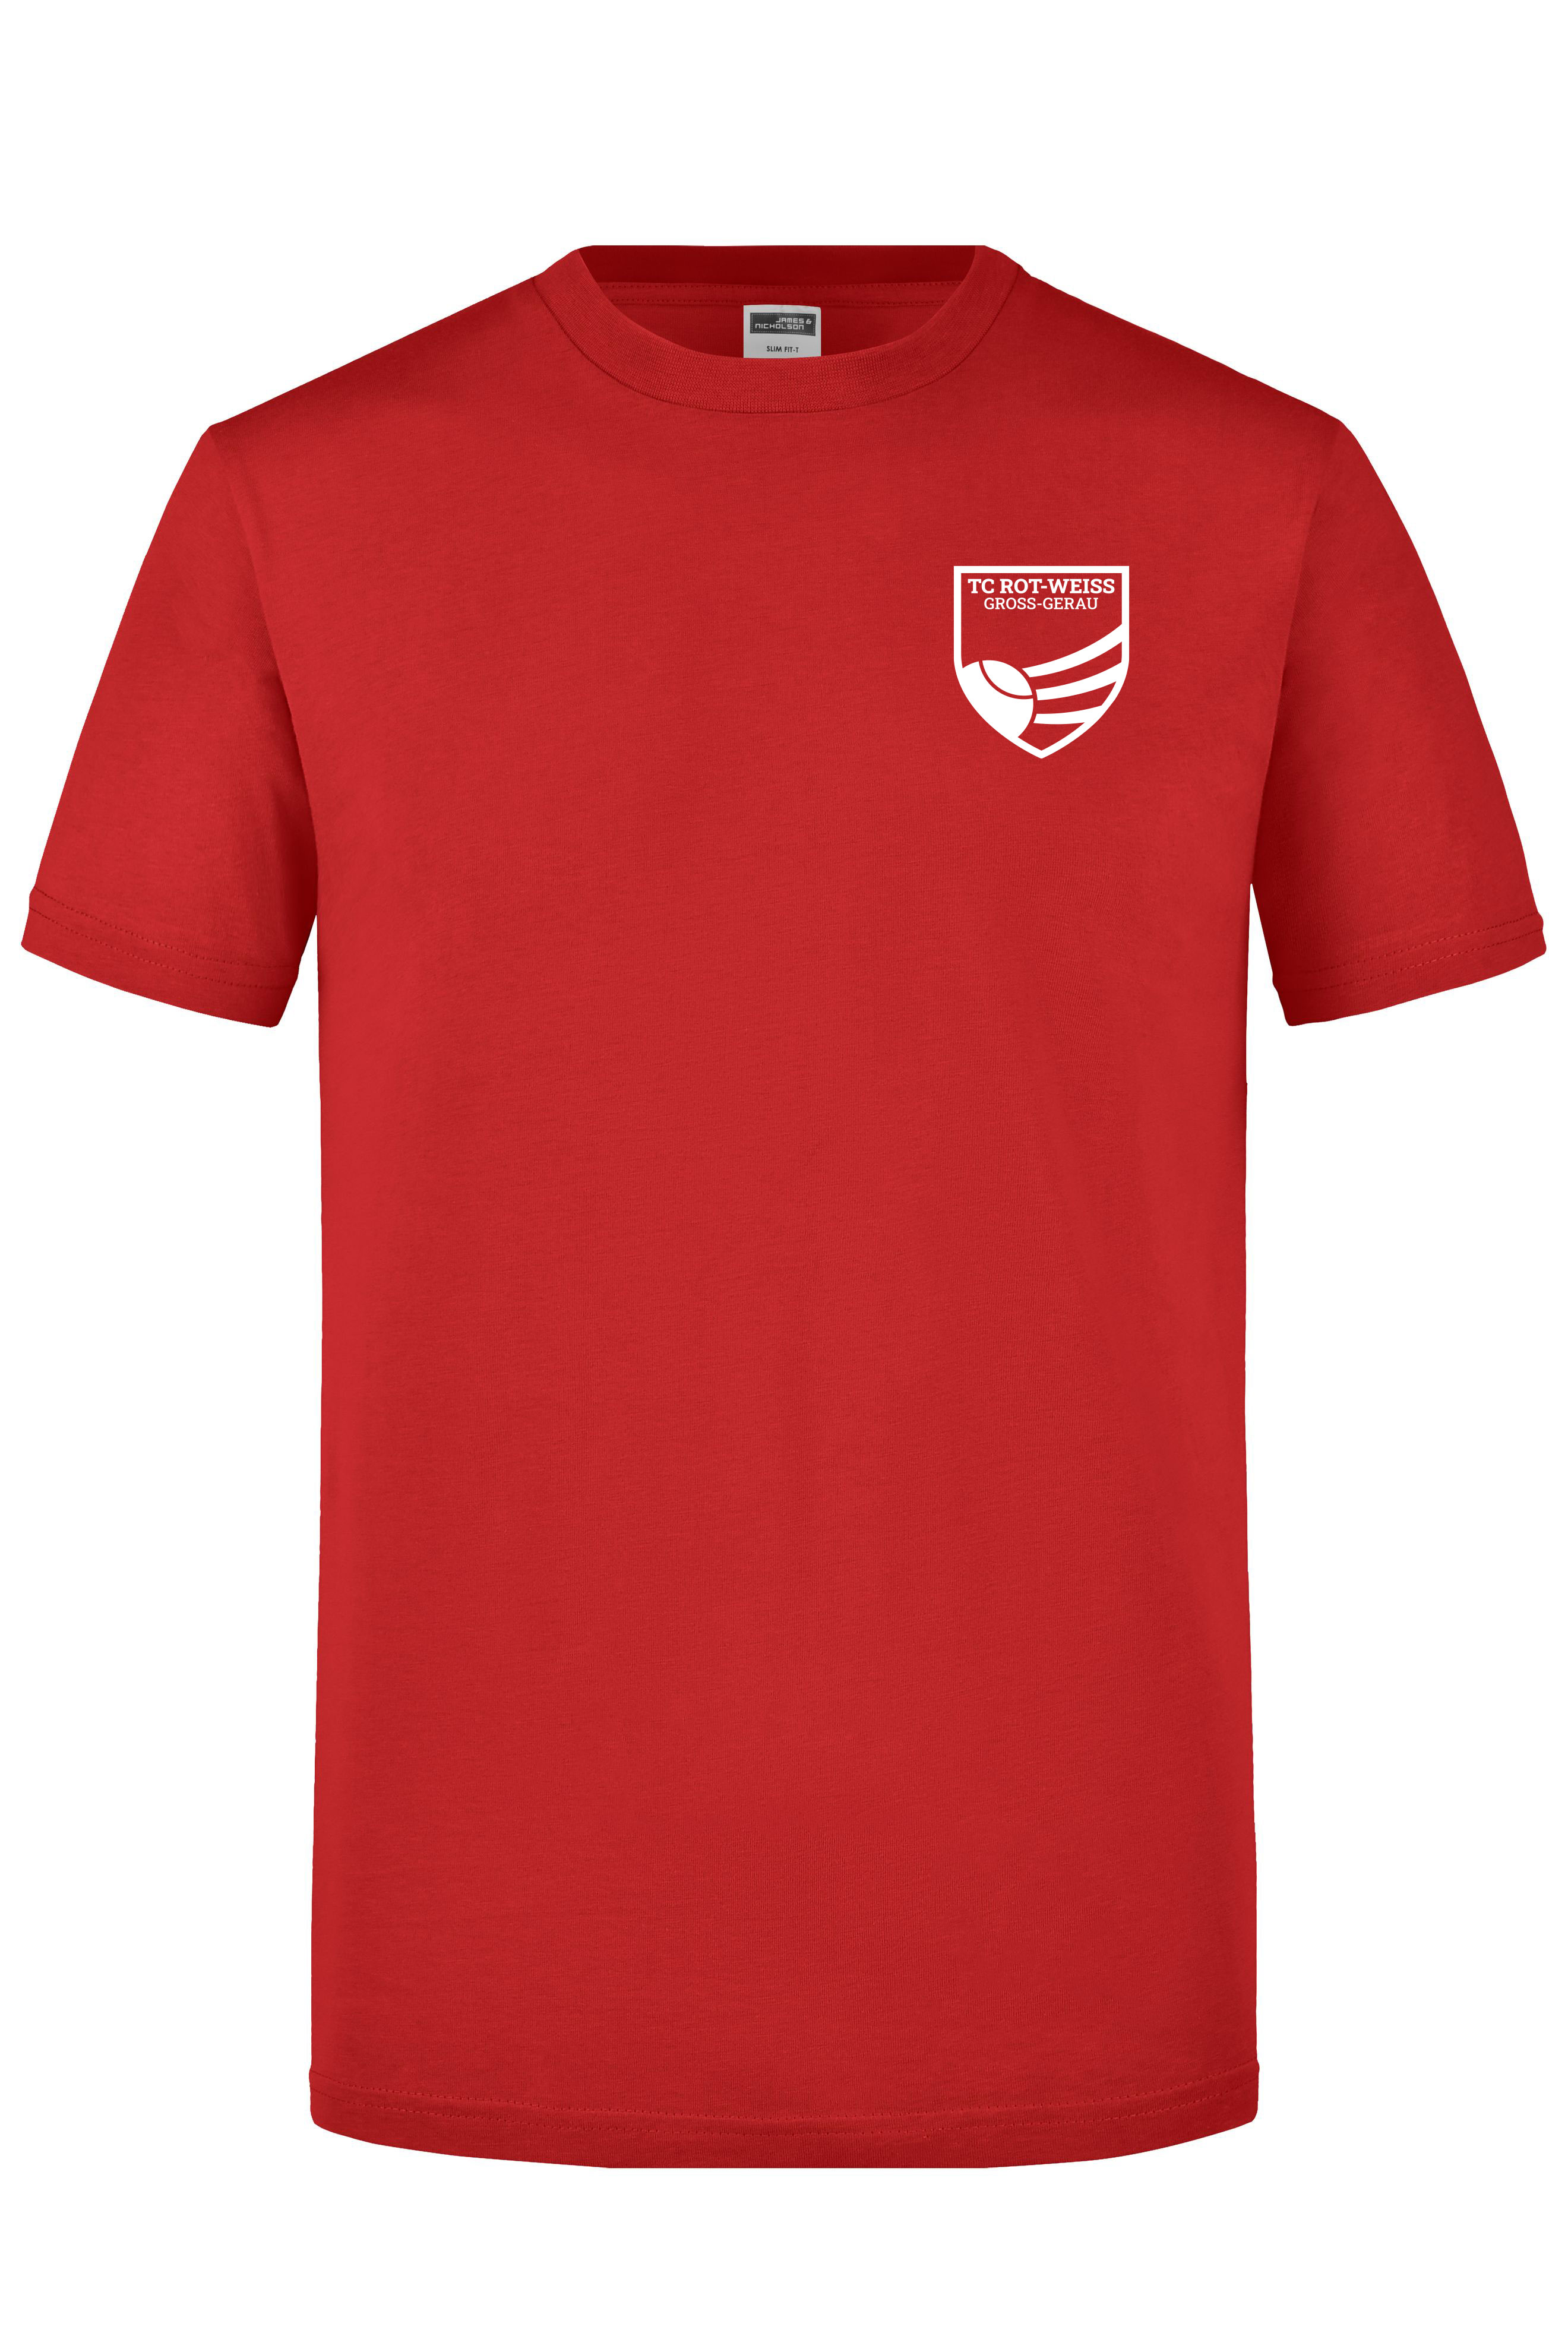 TC Rot-Weiss - Vorteil GG - T-Shirt rot